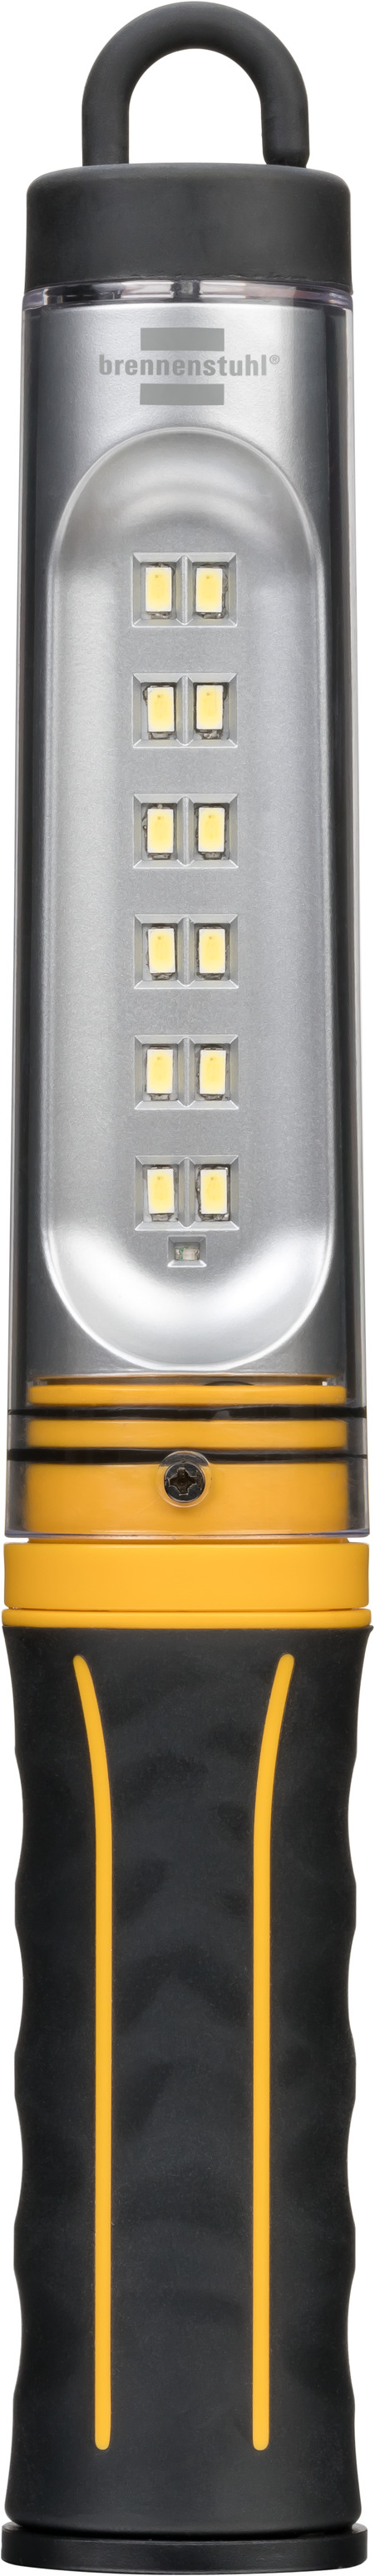 LEDlife T5-FOCUS120, Liten spridning - 19W LED rör, 175lm/W, 60 graders  spridningsvinkel, 120 cm 